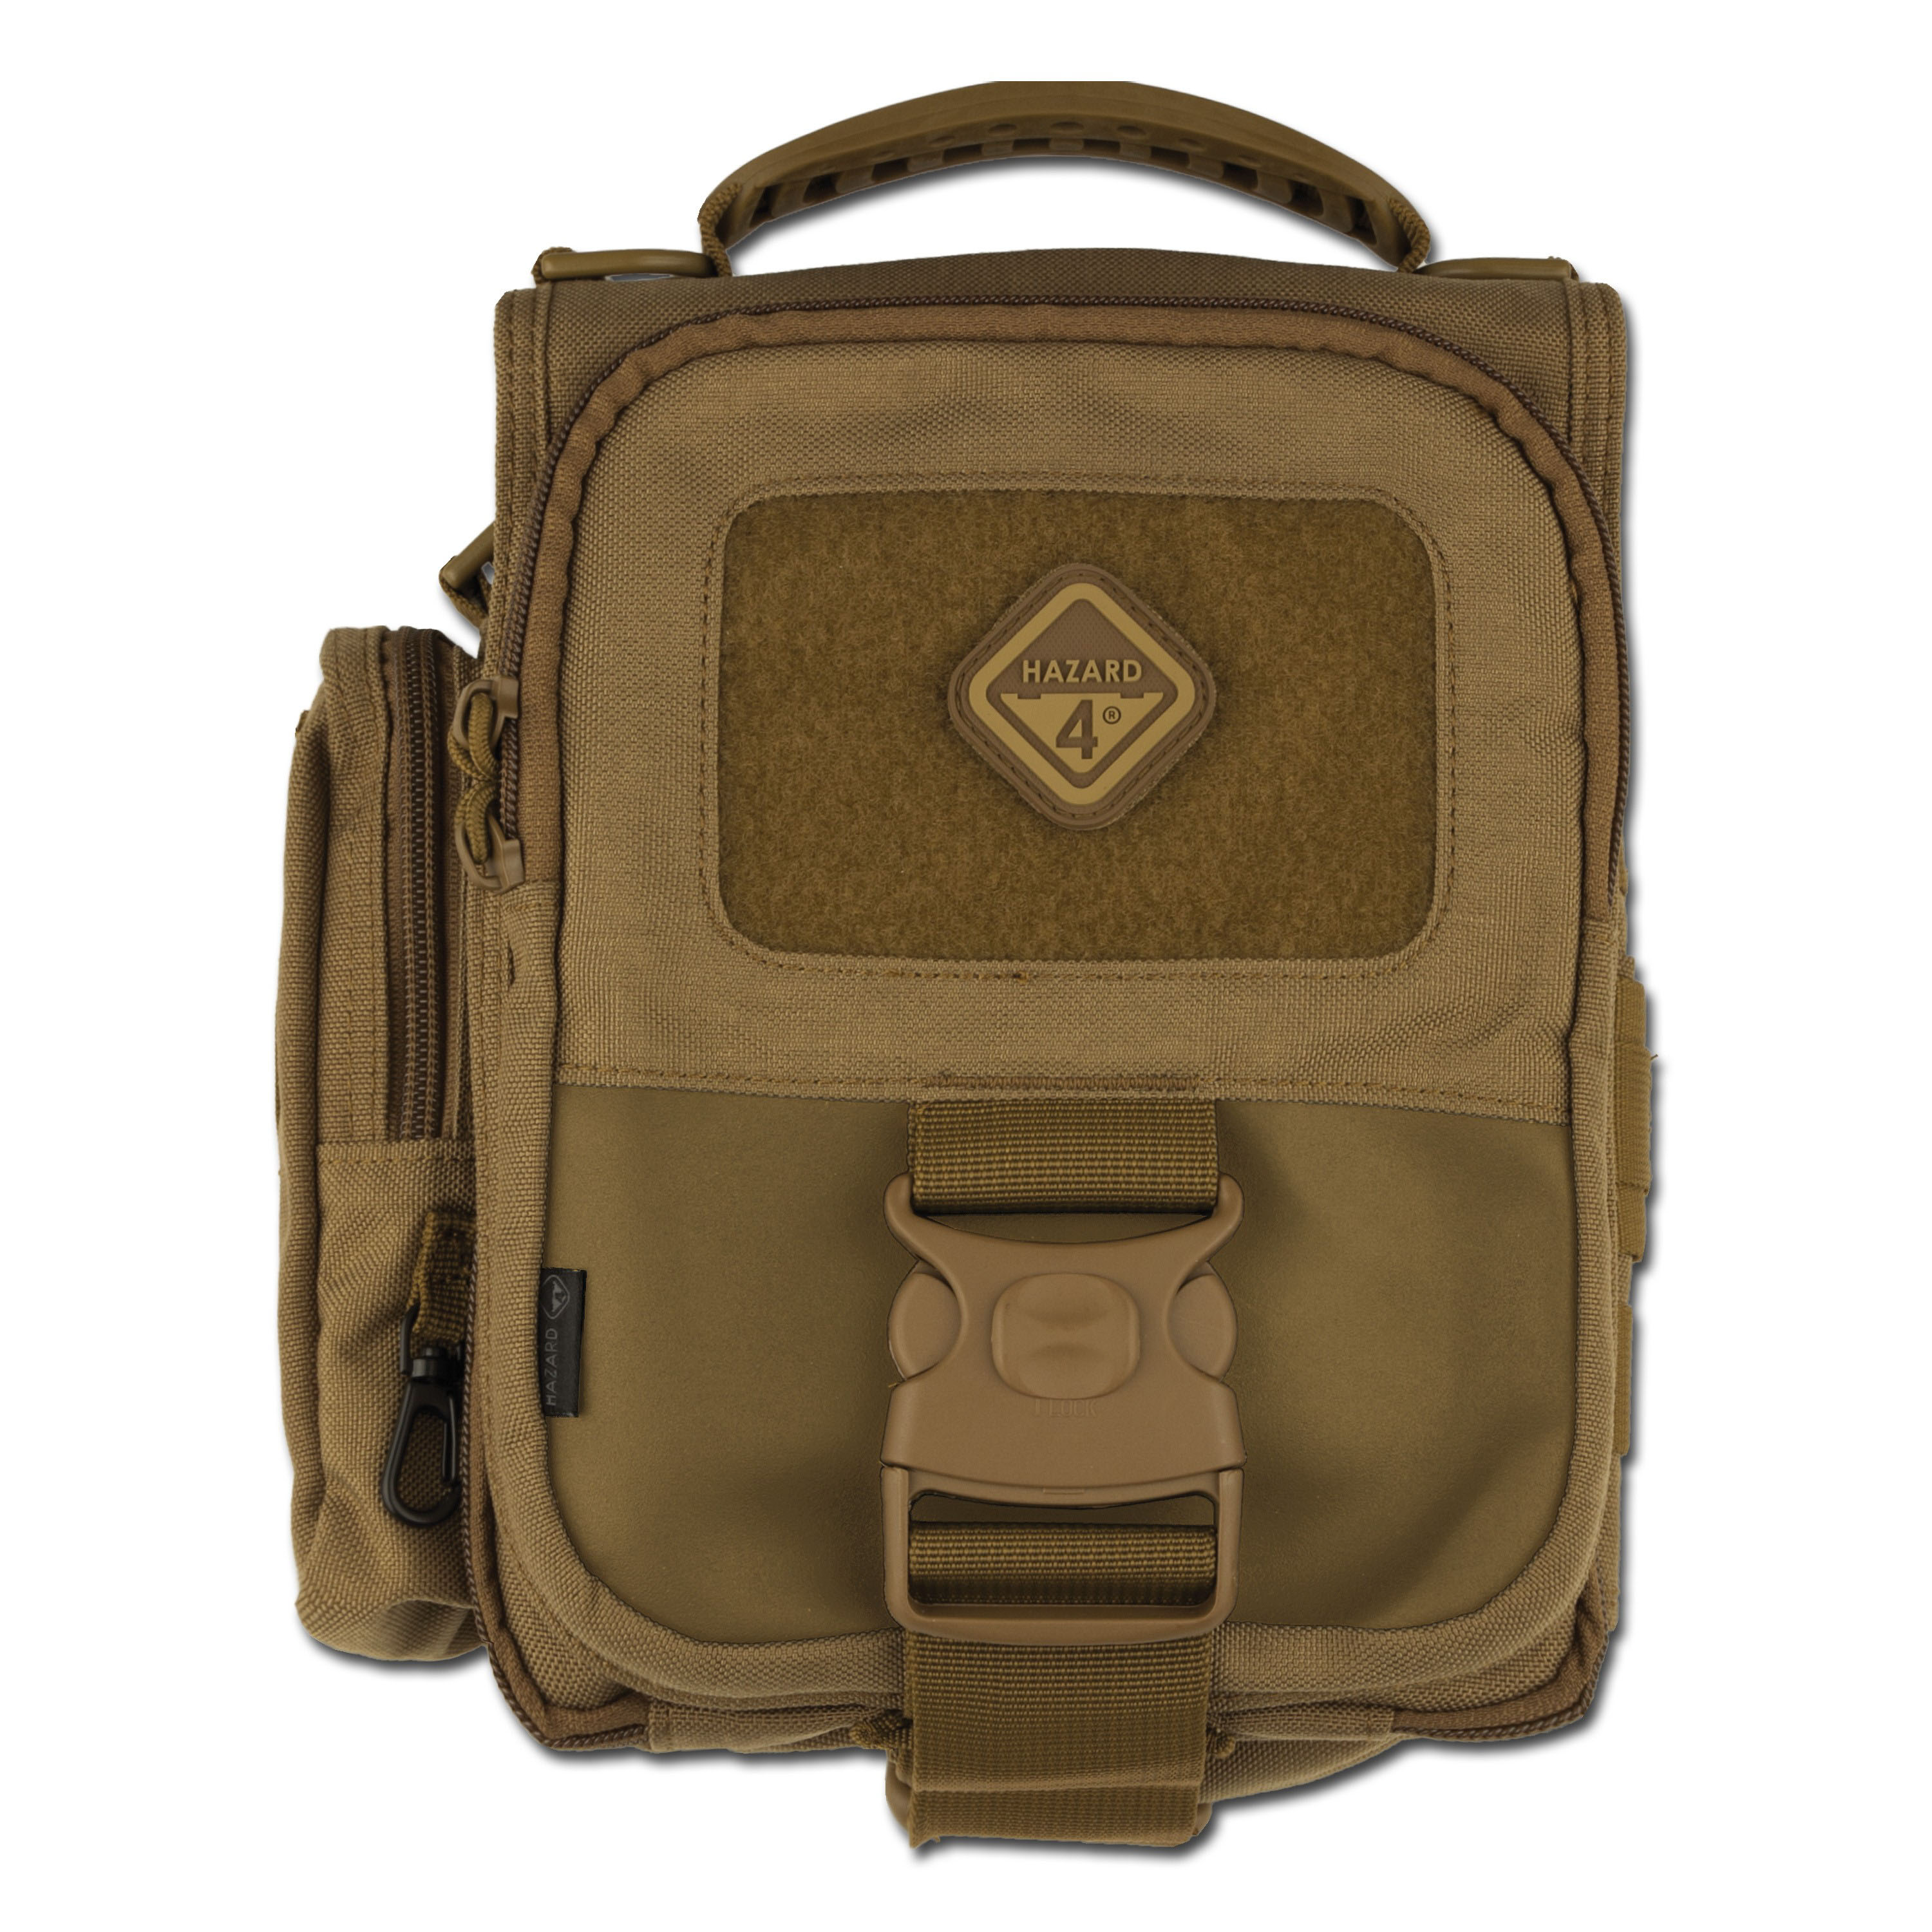 Hazard 4 Defense Courier Tactical Laptop Messenger Bag - M.C.L.P